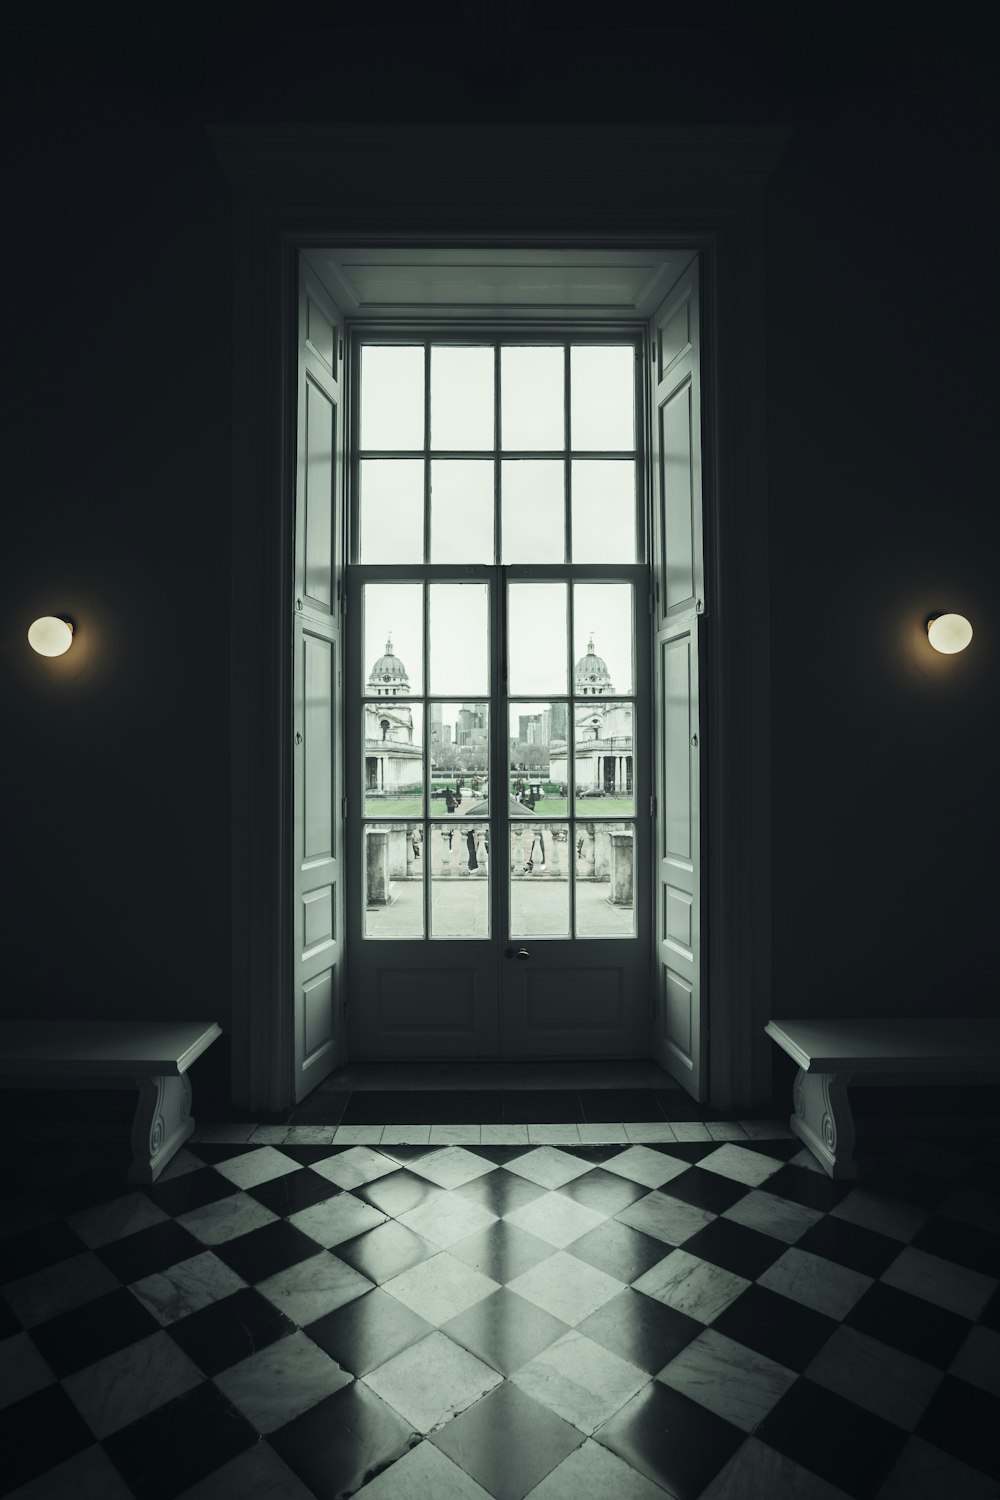 체크 무늬 바닥과 큰 창문이있는 방